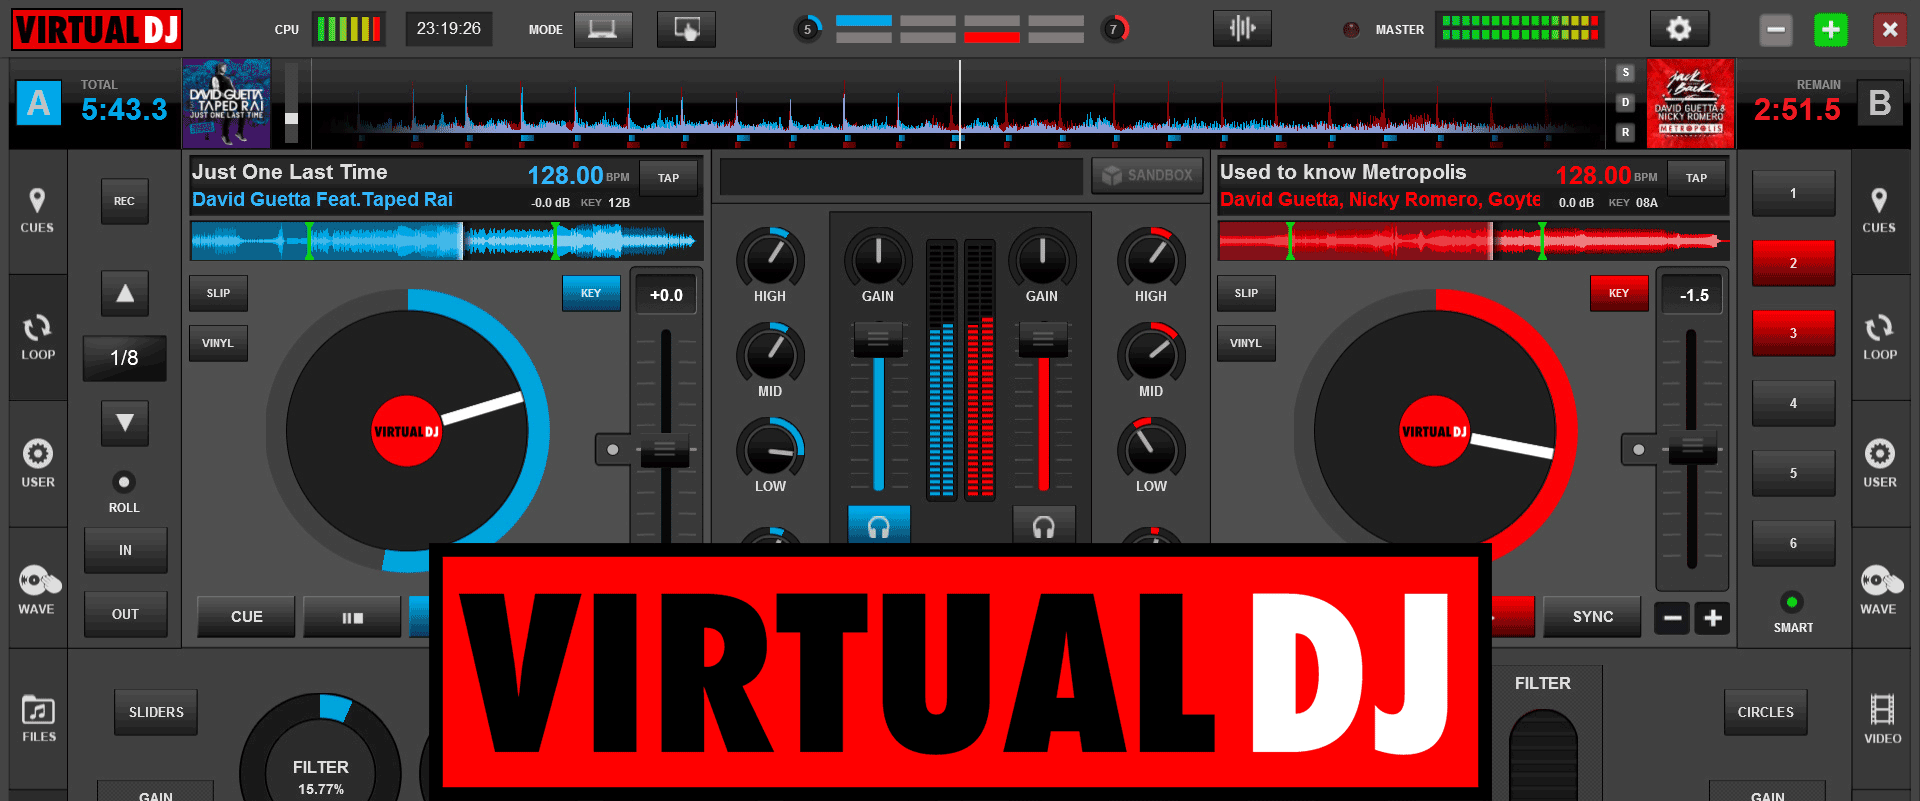 Virtual dj pro basic free download mac